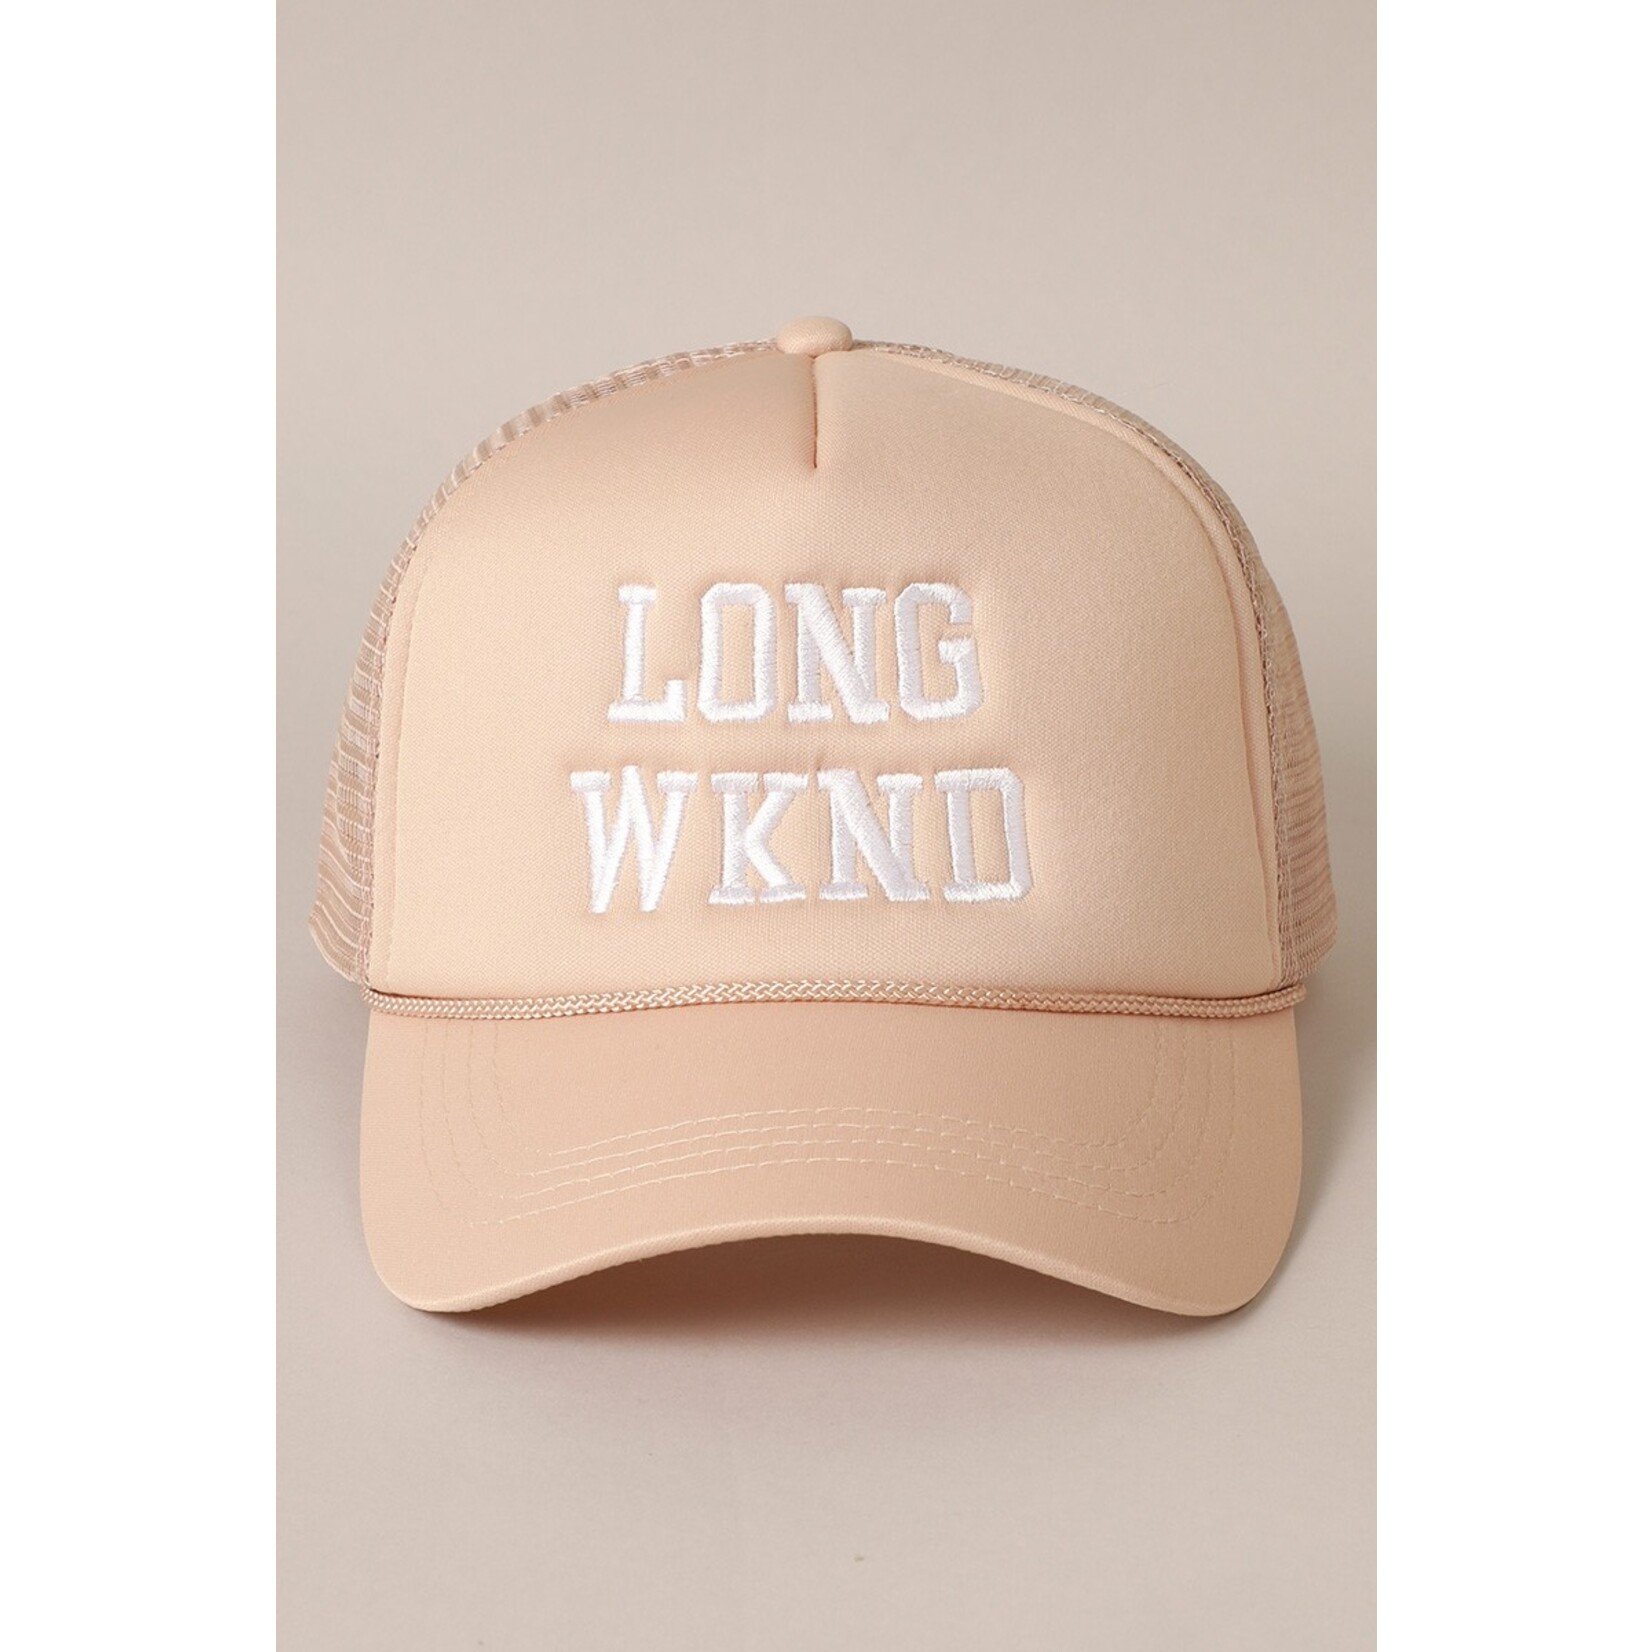 Fashion City Long Weekend Trucker Hat